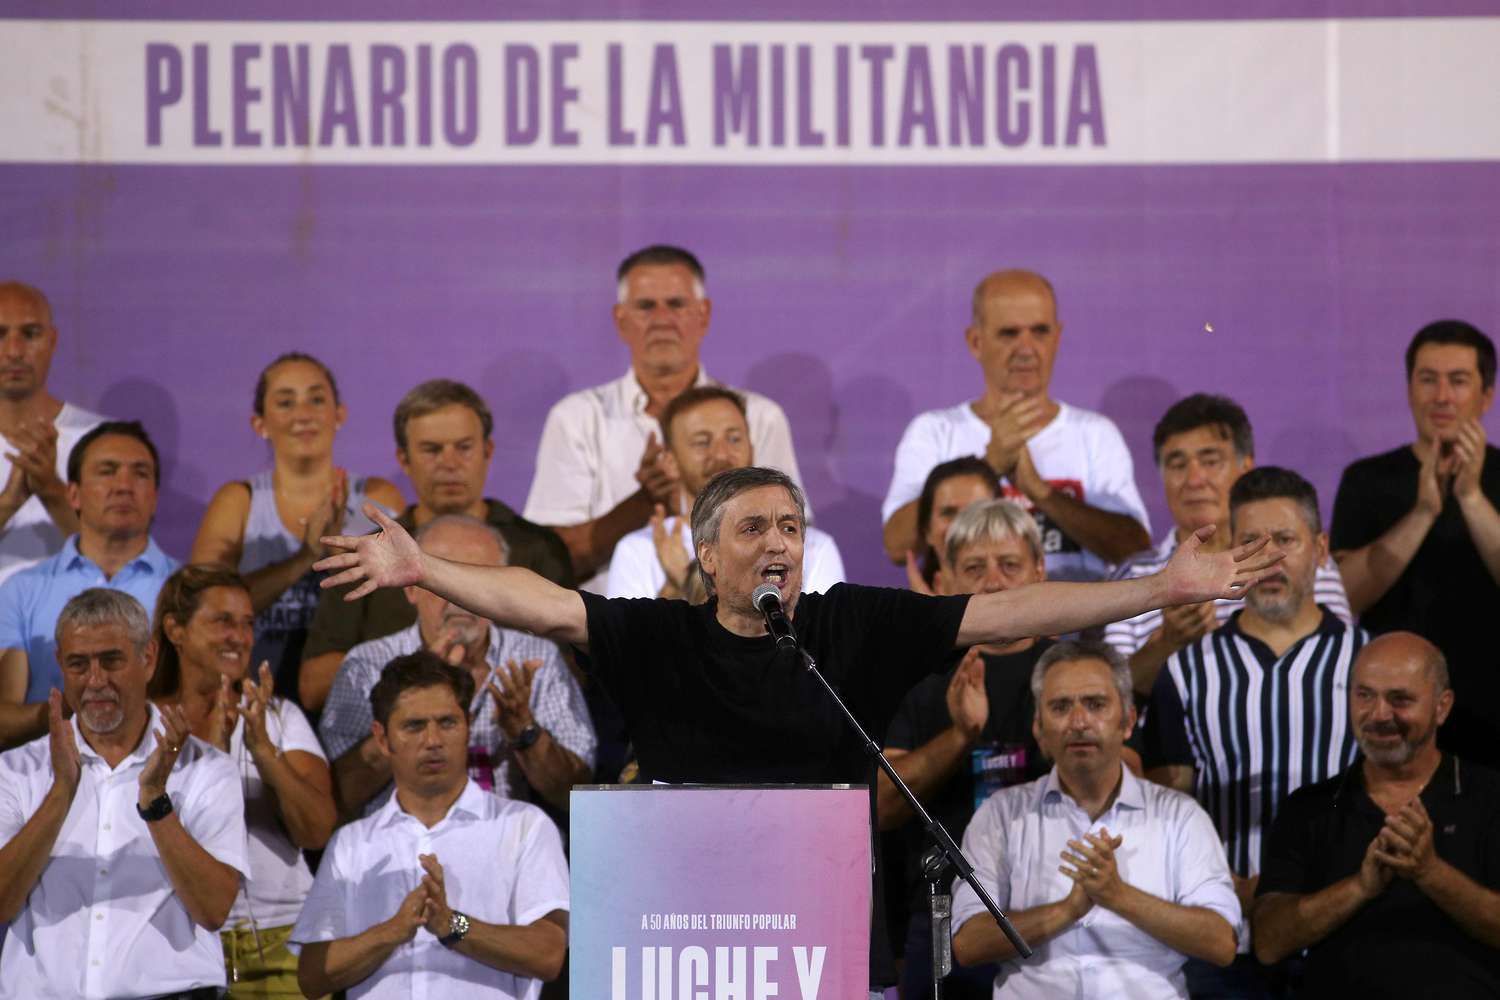 Máximo Kirchner en el plenario de la militancia en Avellaneda.